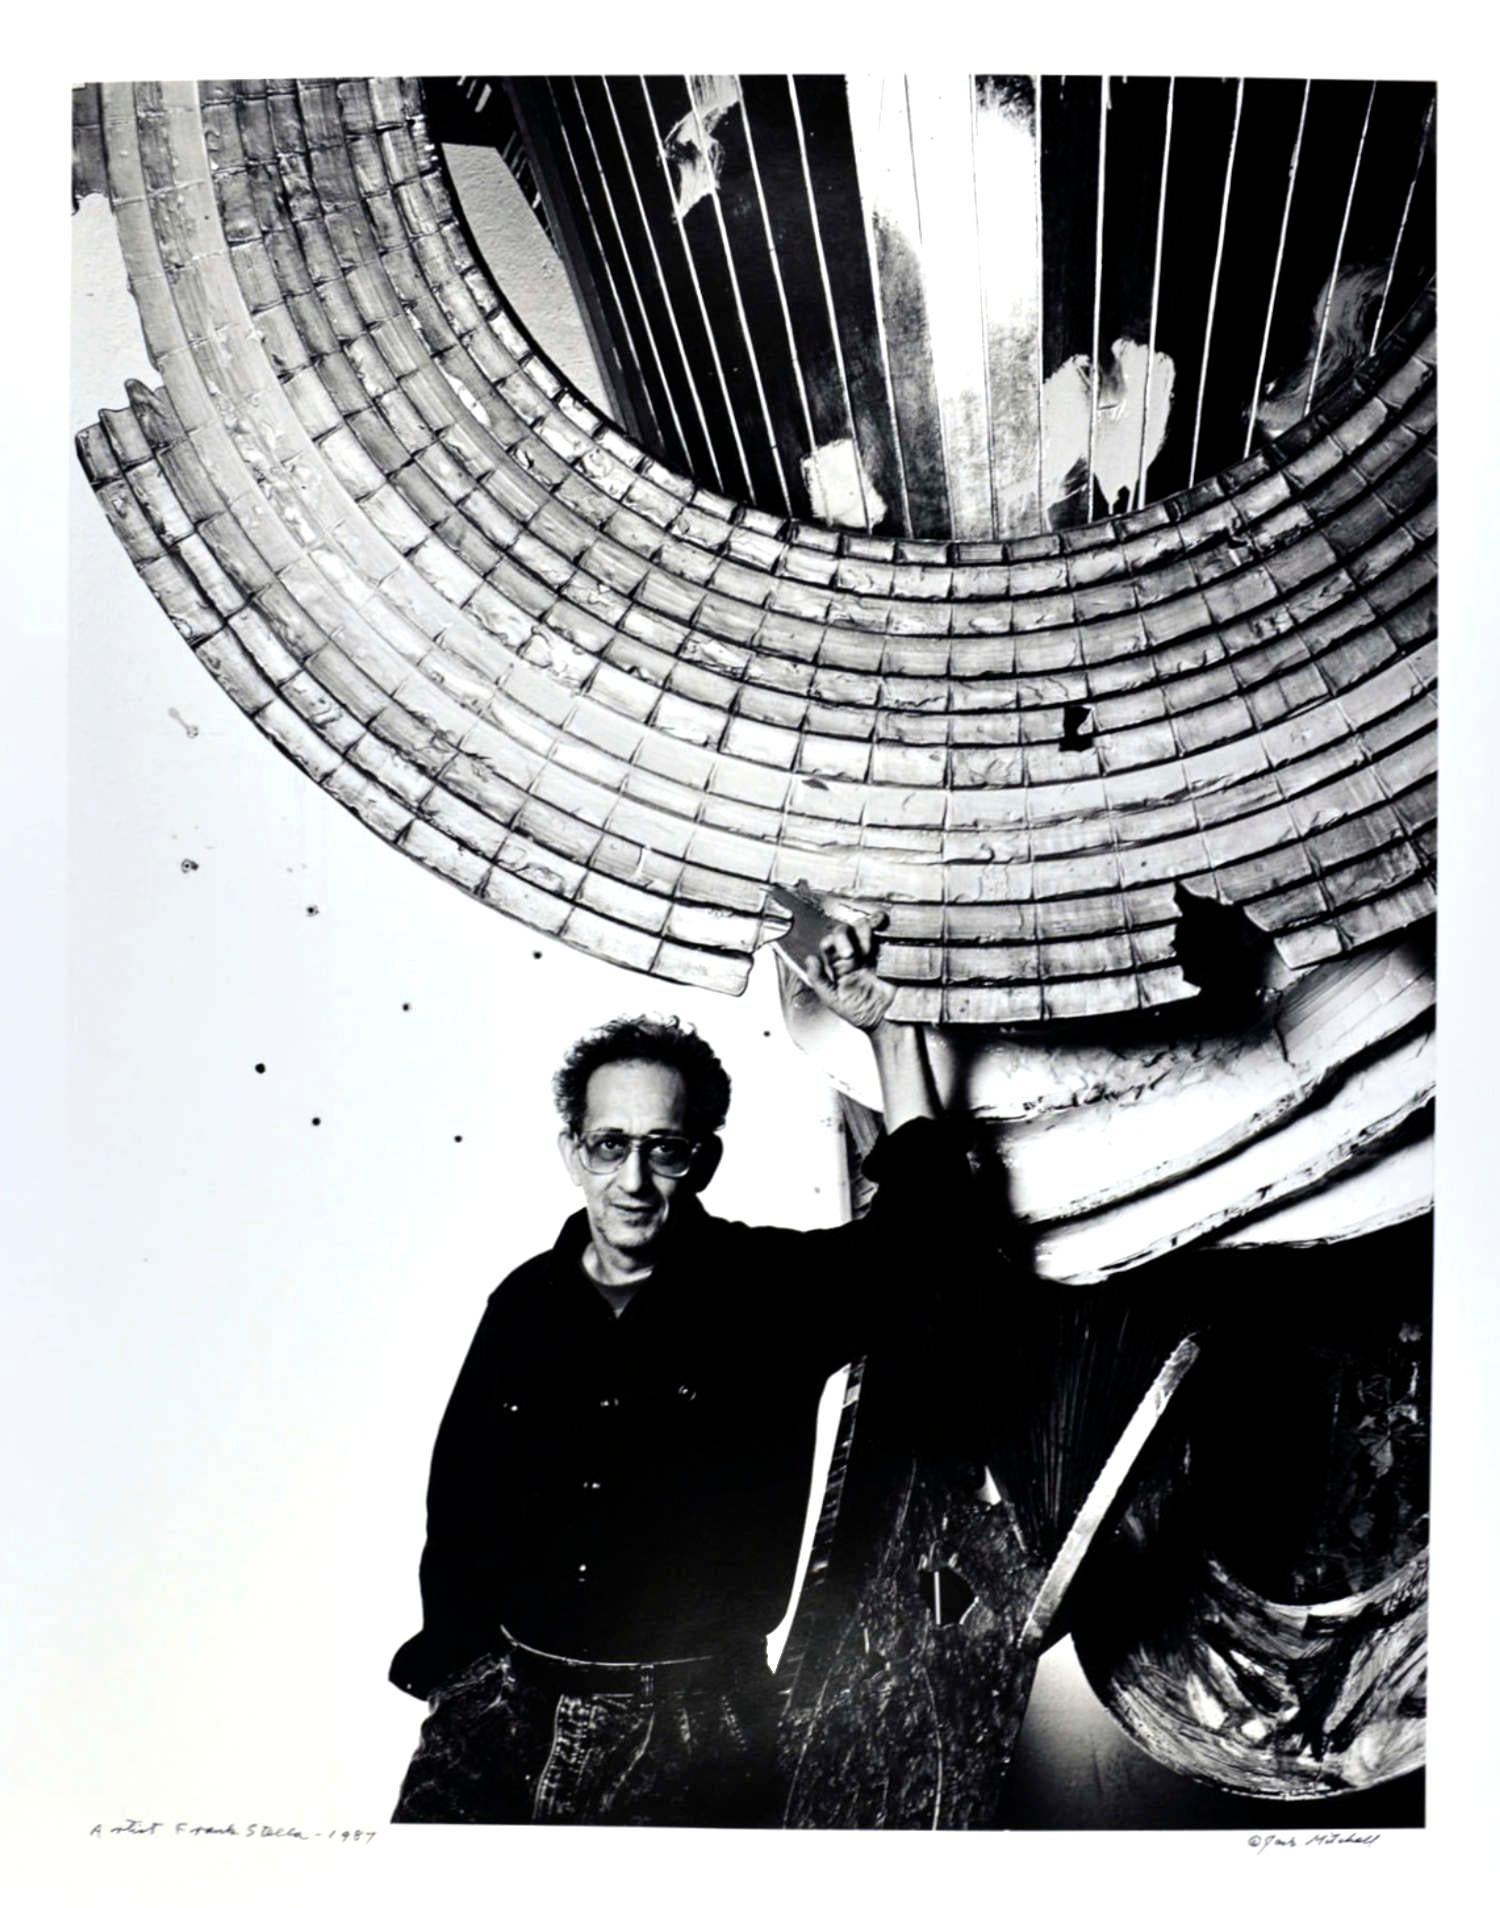 16 x 20" alte Silbergelatinefotografie des Künstlers Frank Stella in seinem Atelier mit aktuellen Arbeiten, 1987. Es ist von Jack Mitchell auf der Vorderseite und mit Bleistift auf der Rückseite signiert. Kommt direkt aus dem Jack Mitchell Archiv